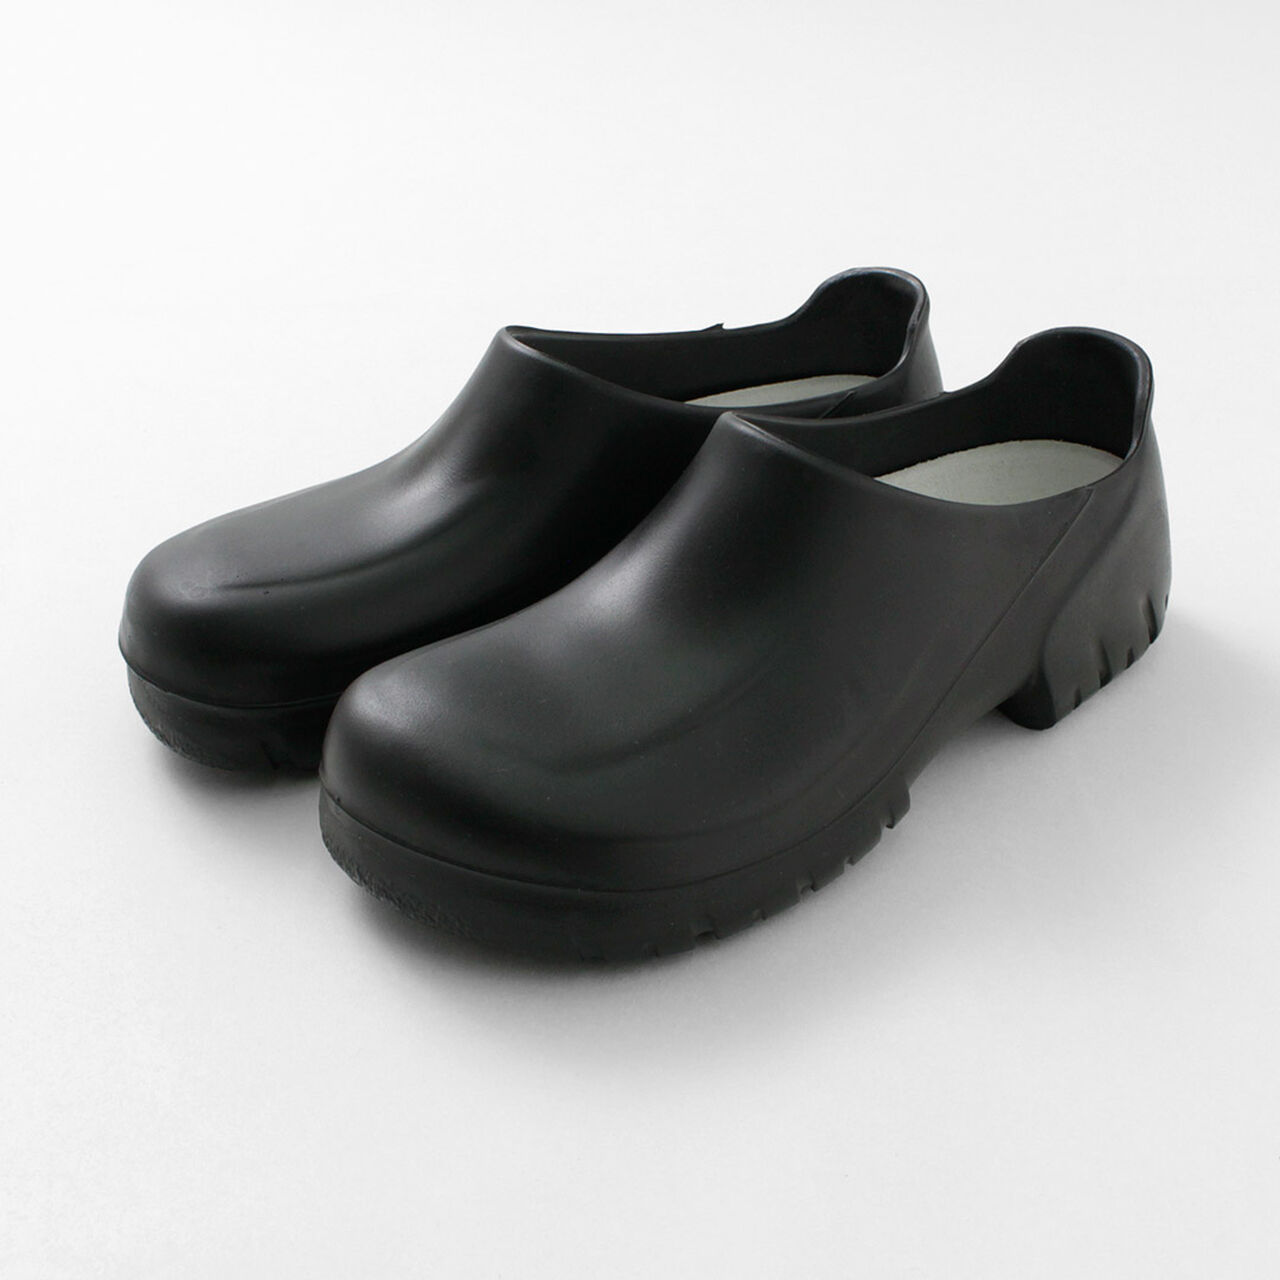 A630 Cock Shoes Clog Sandals,Black, large image number 0